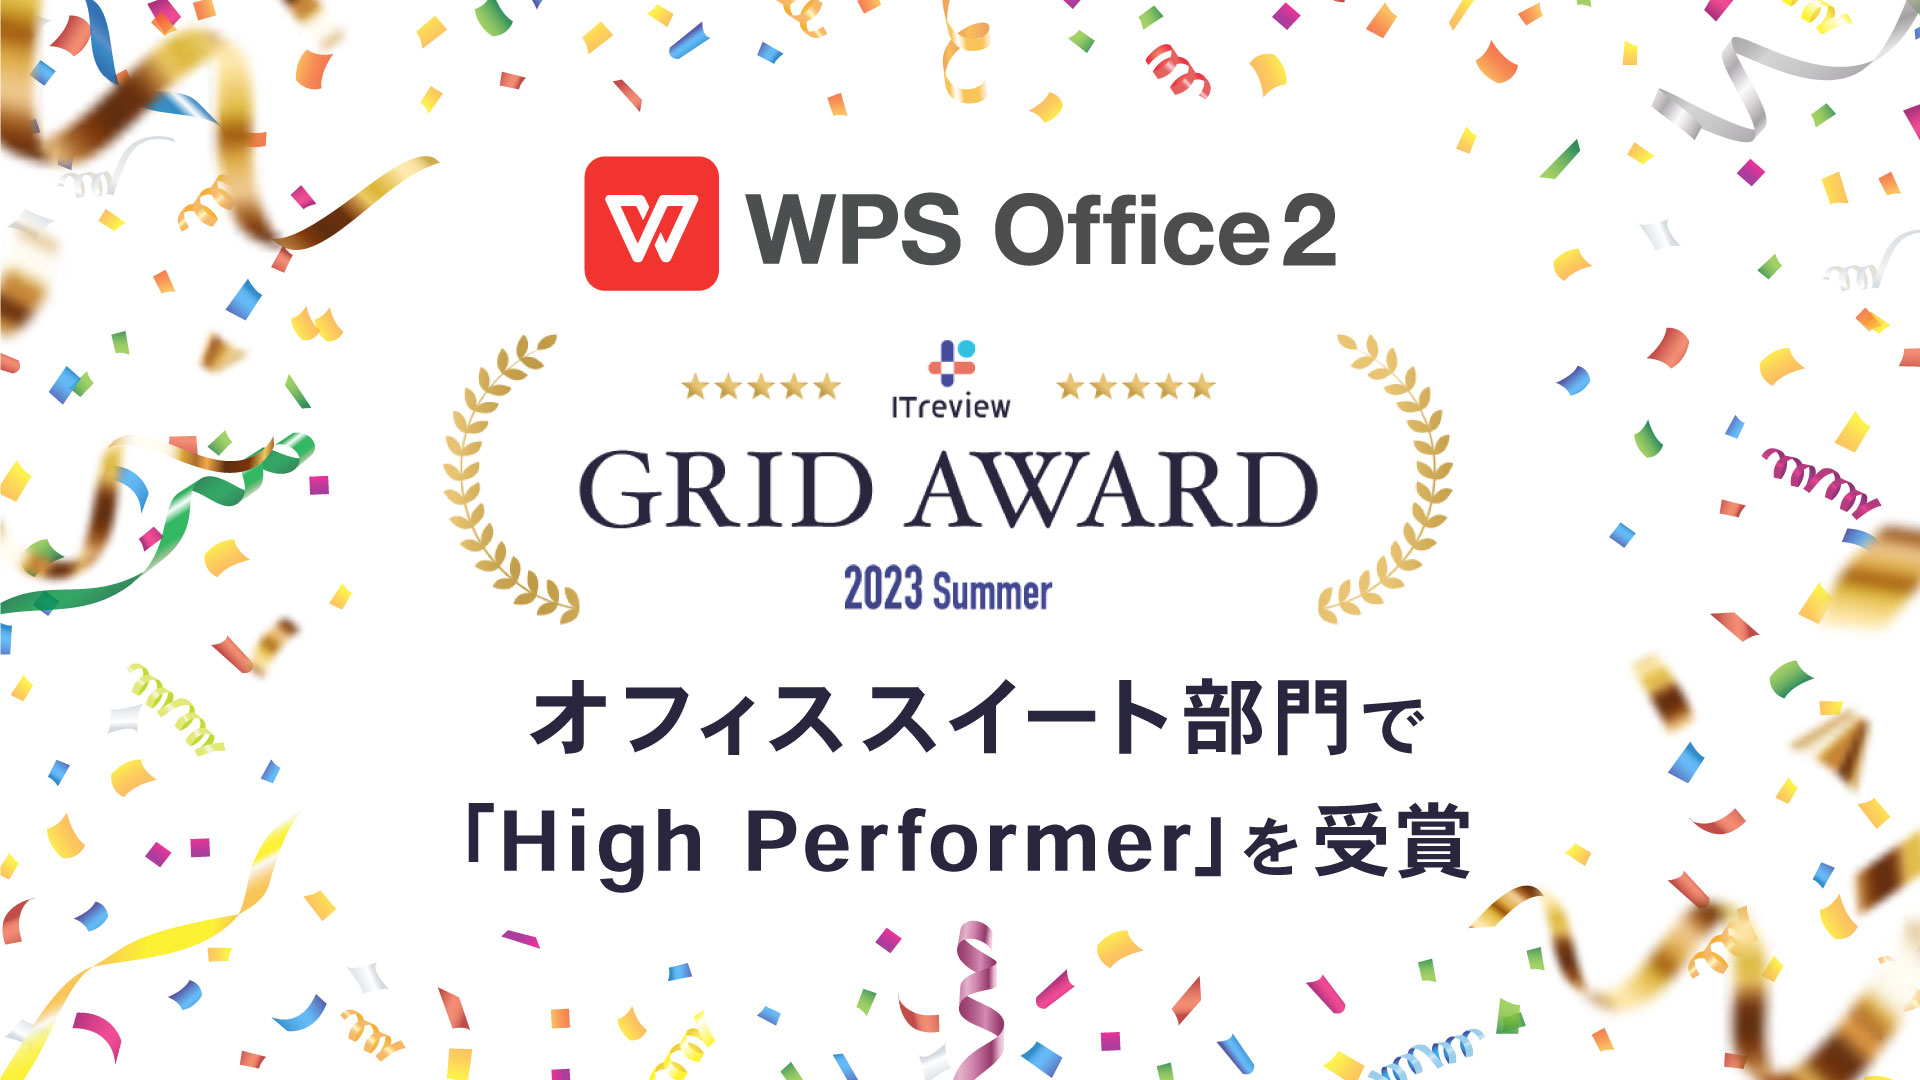 オフィスソフト「WPS Office」、「ITreview Grid Award 2023 Summer」オフィススイー